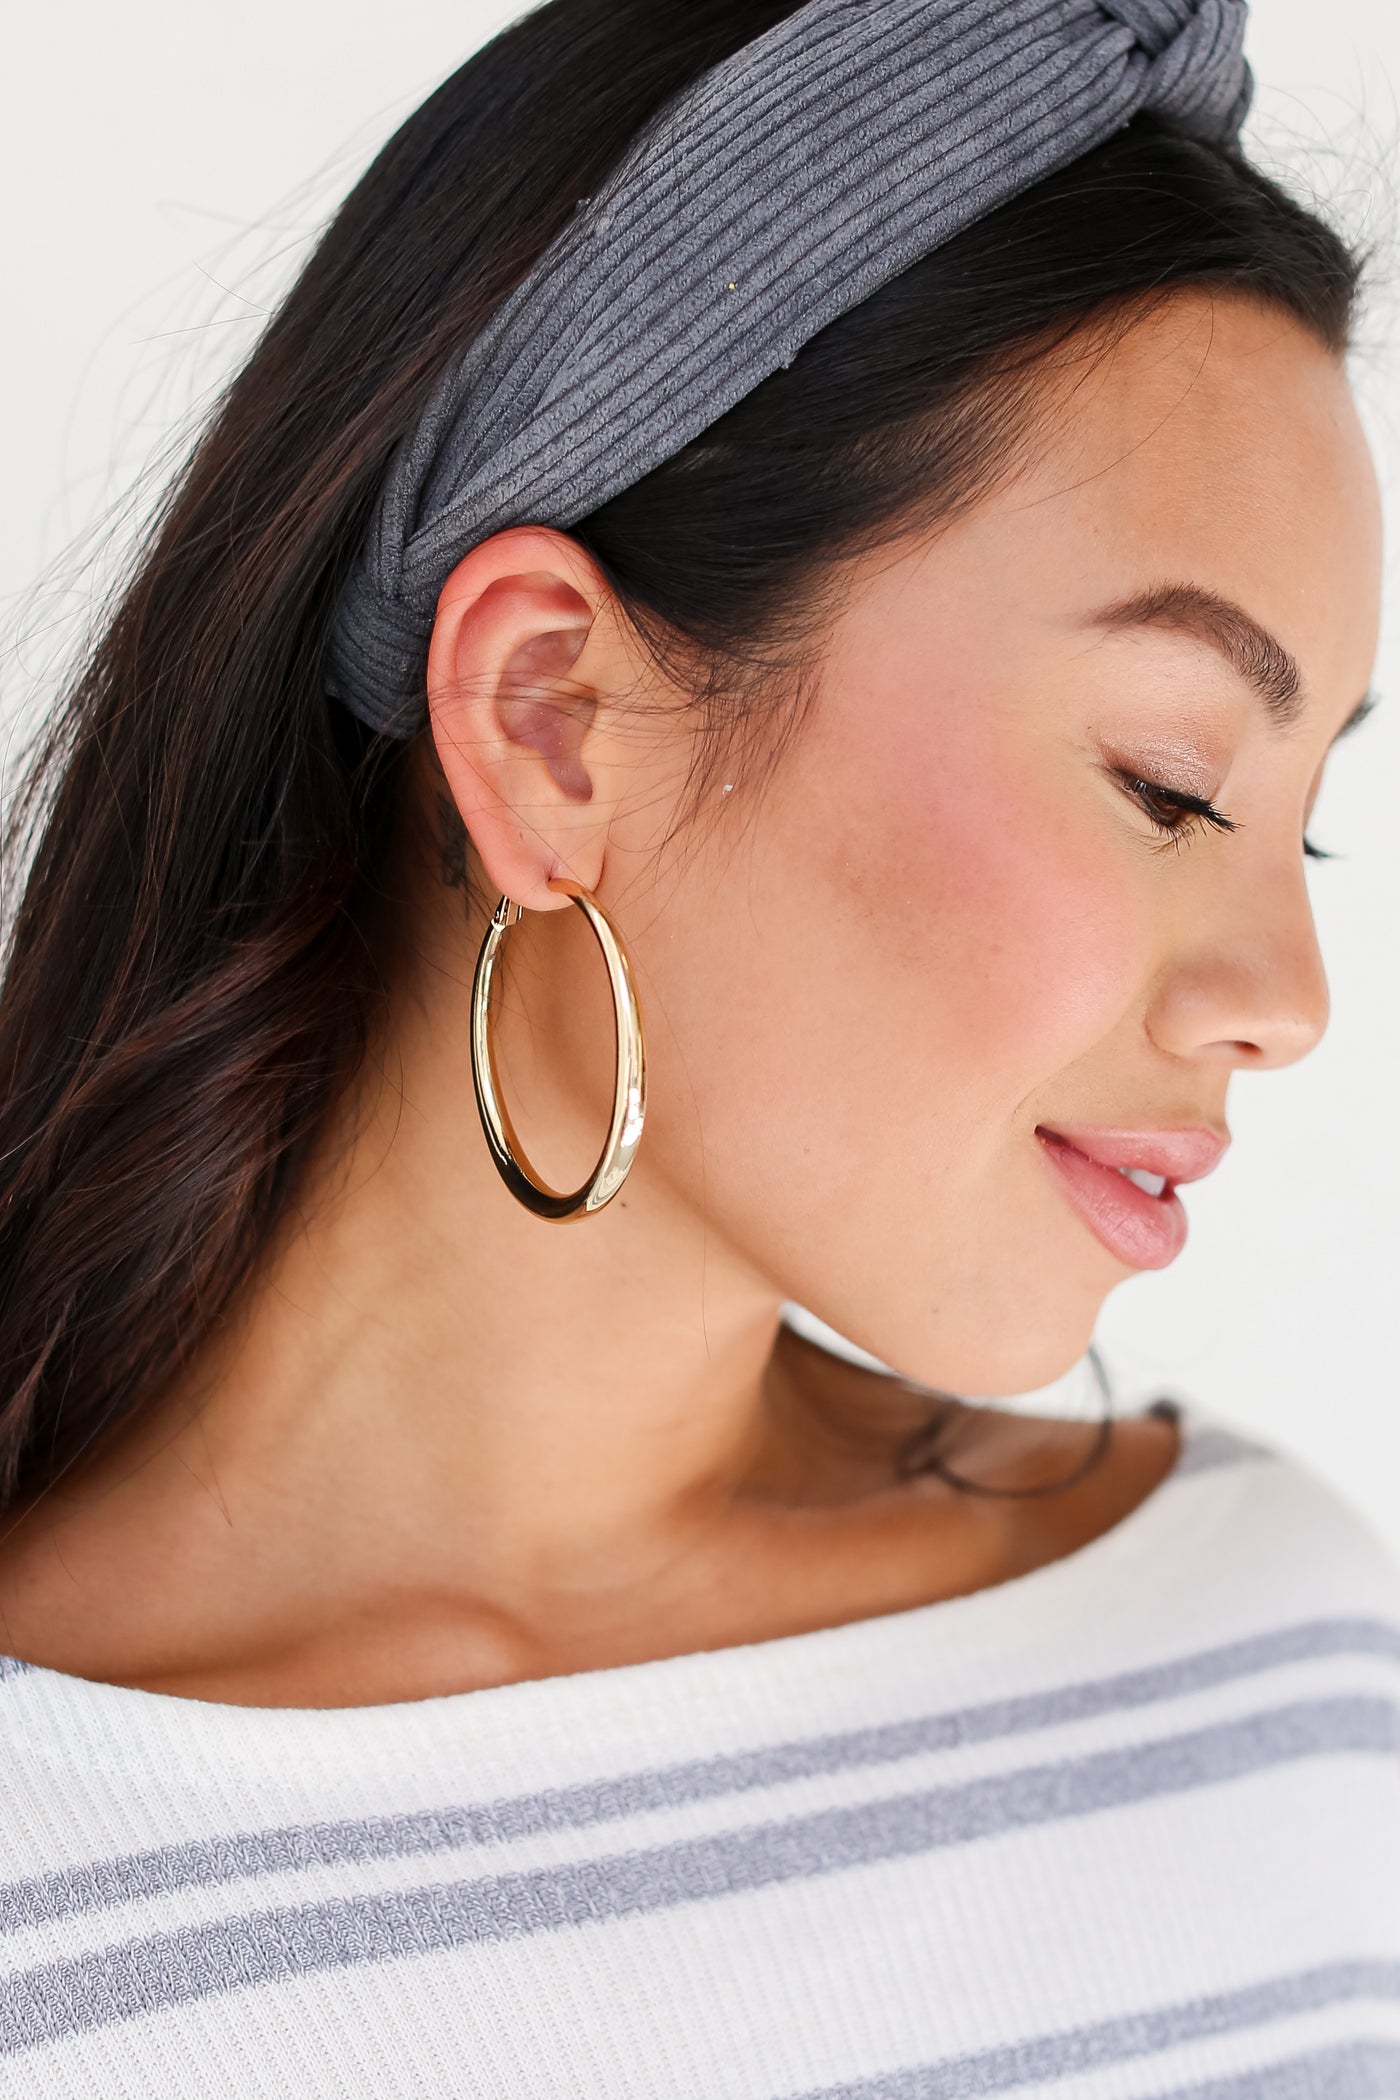 model wearing Gold Hoop Earrings